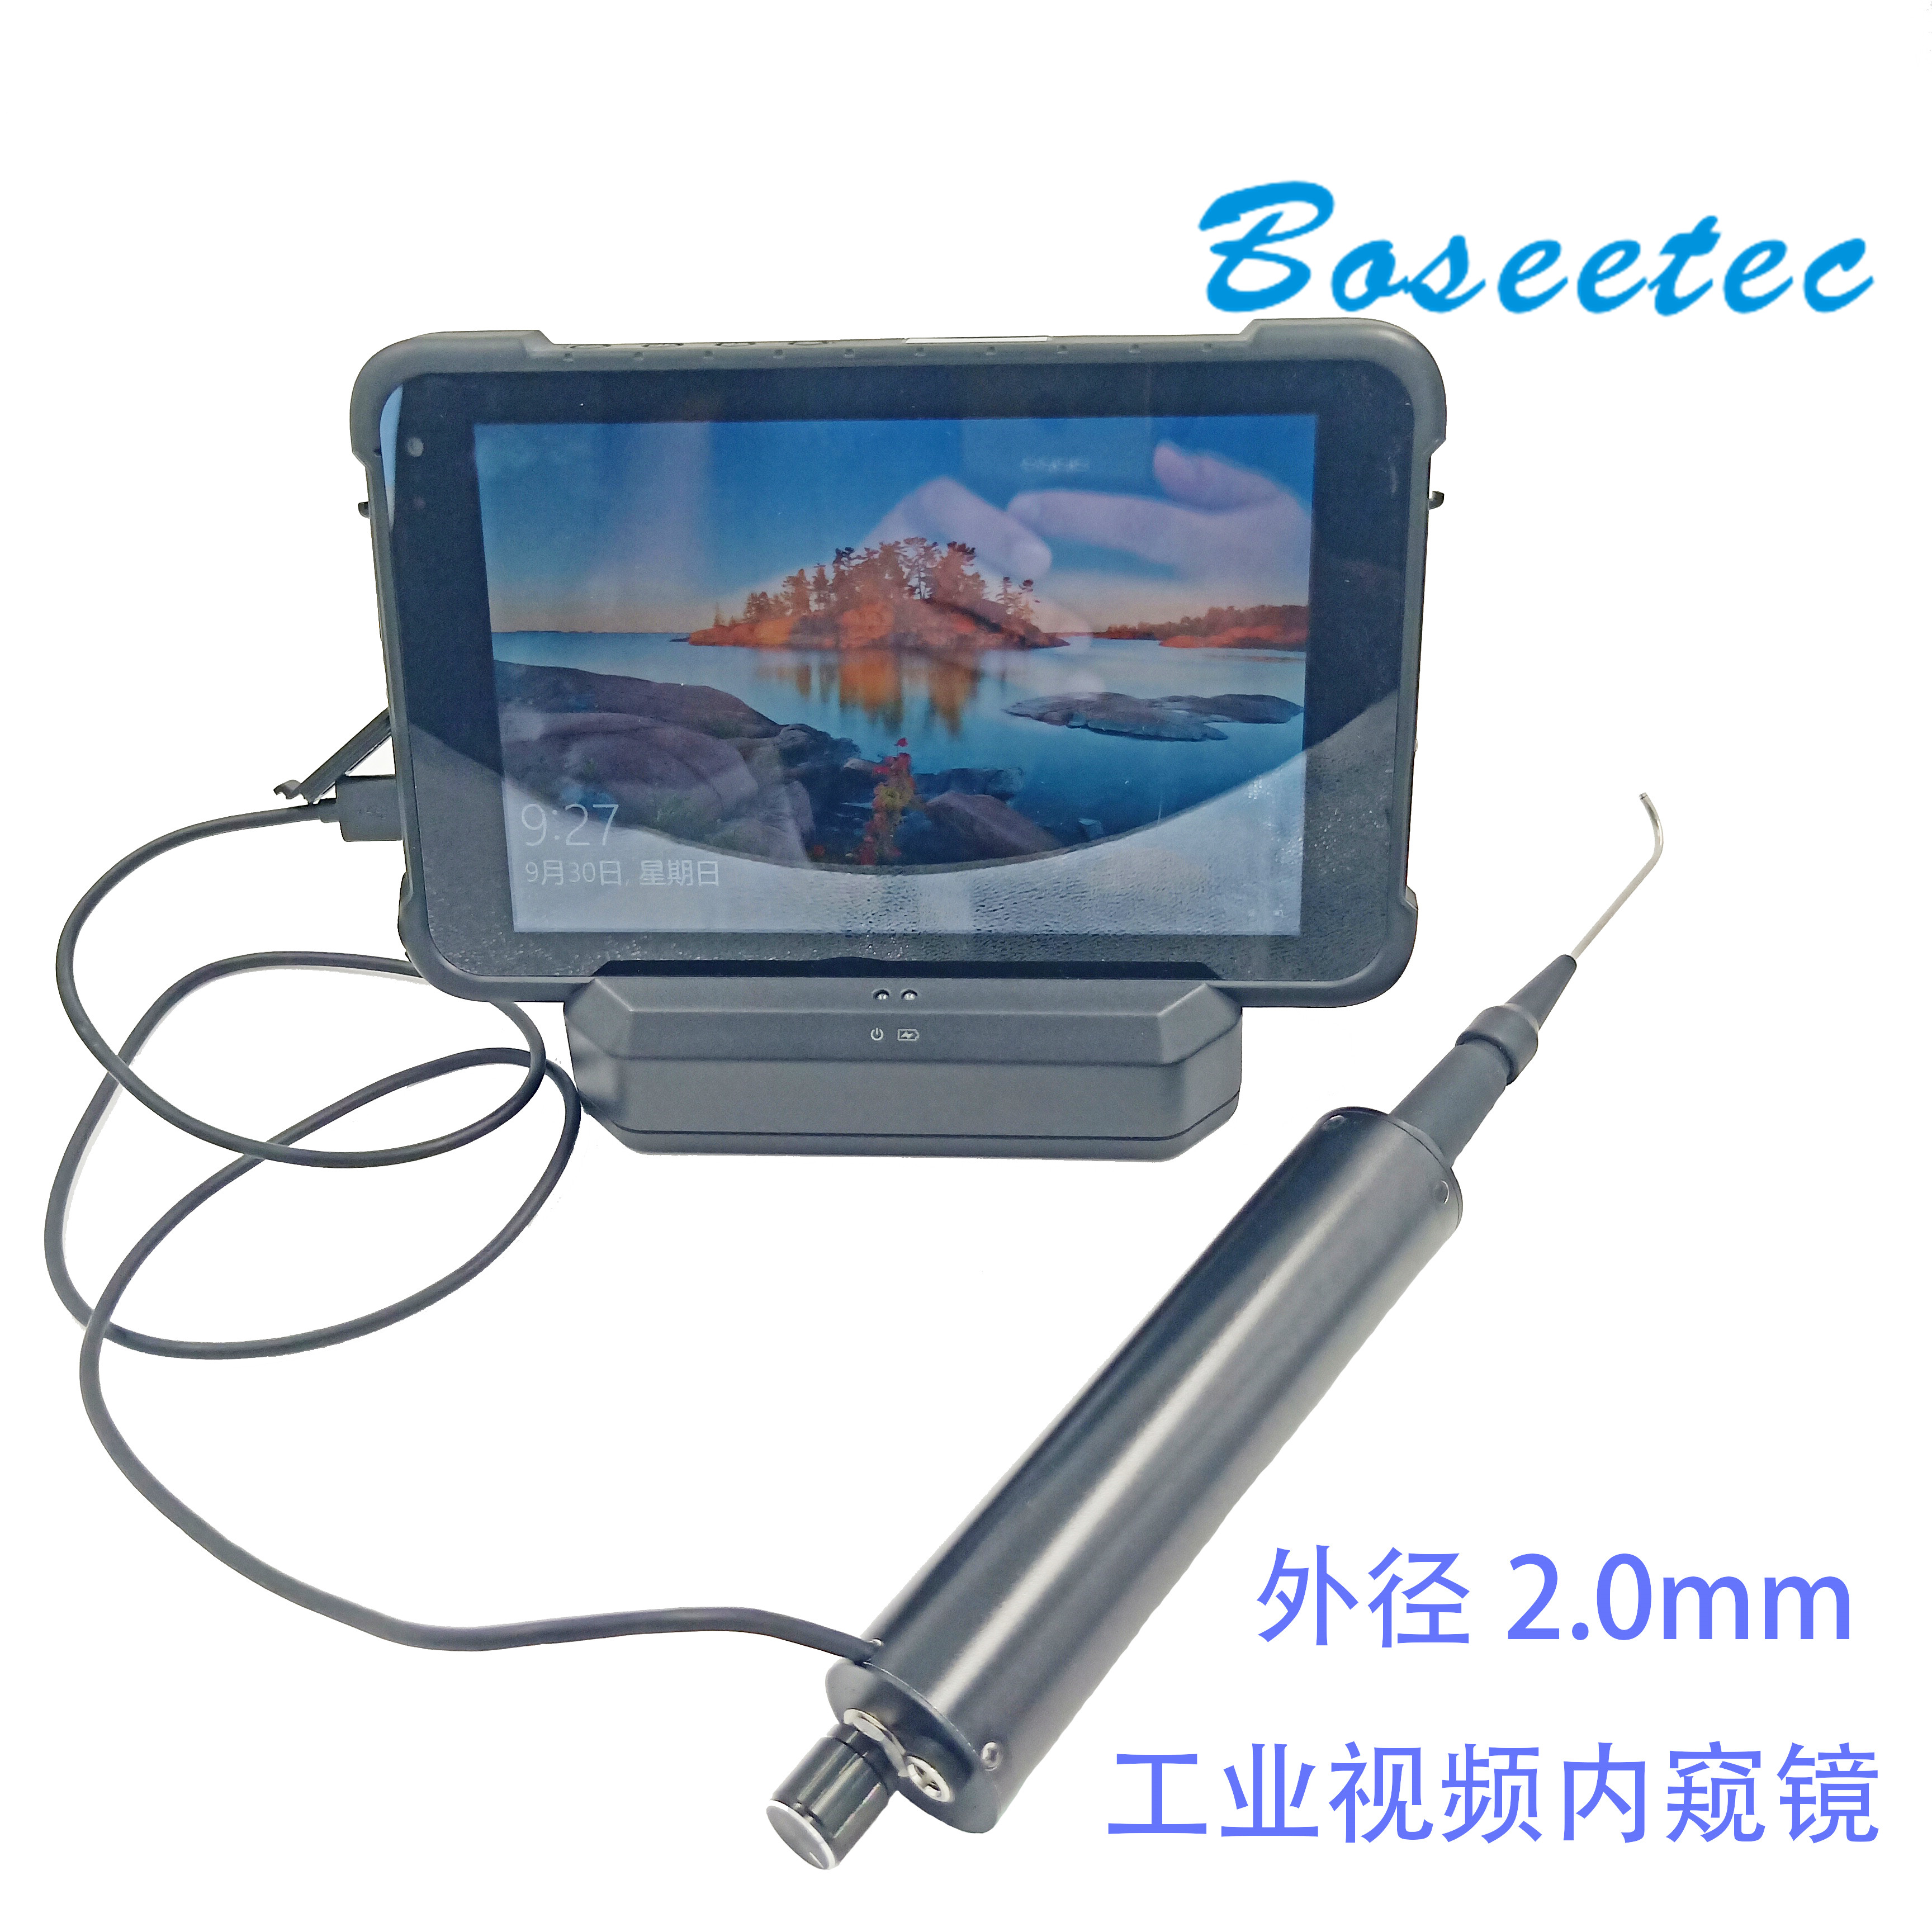 深圳boseetec 小直径2.0mm电子视频内窥镜